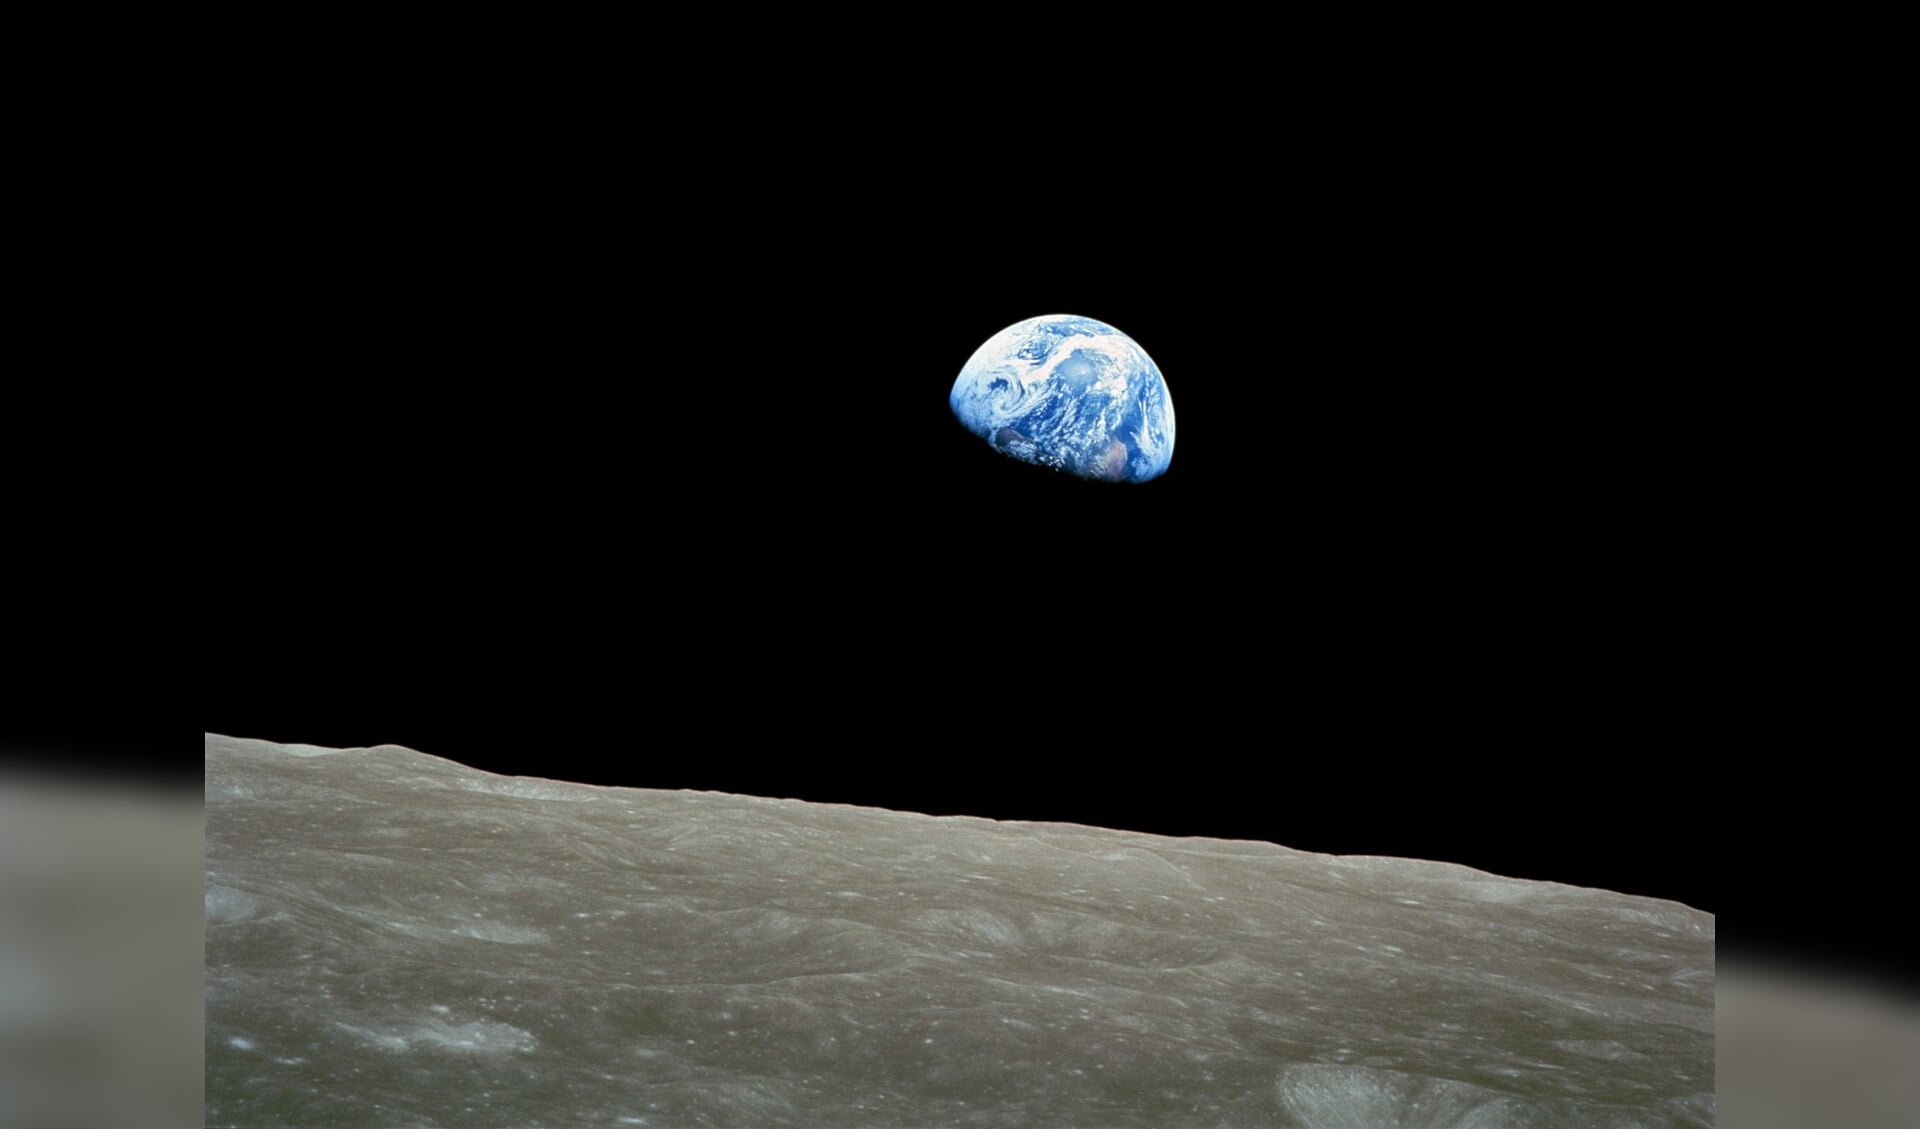 De legendarische foto van de aarde gemaakt vanuit de Apollo 8 in 1968, beschikbaar gesteld door NASA.